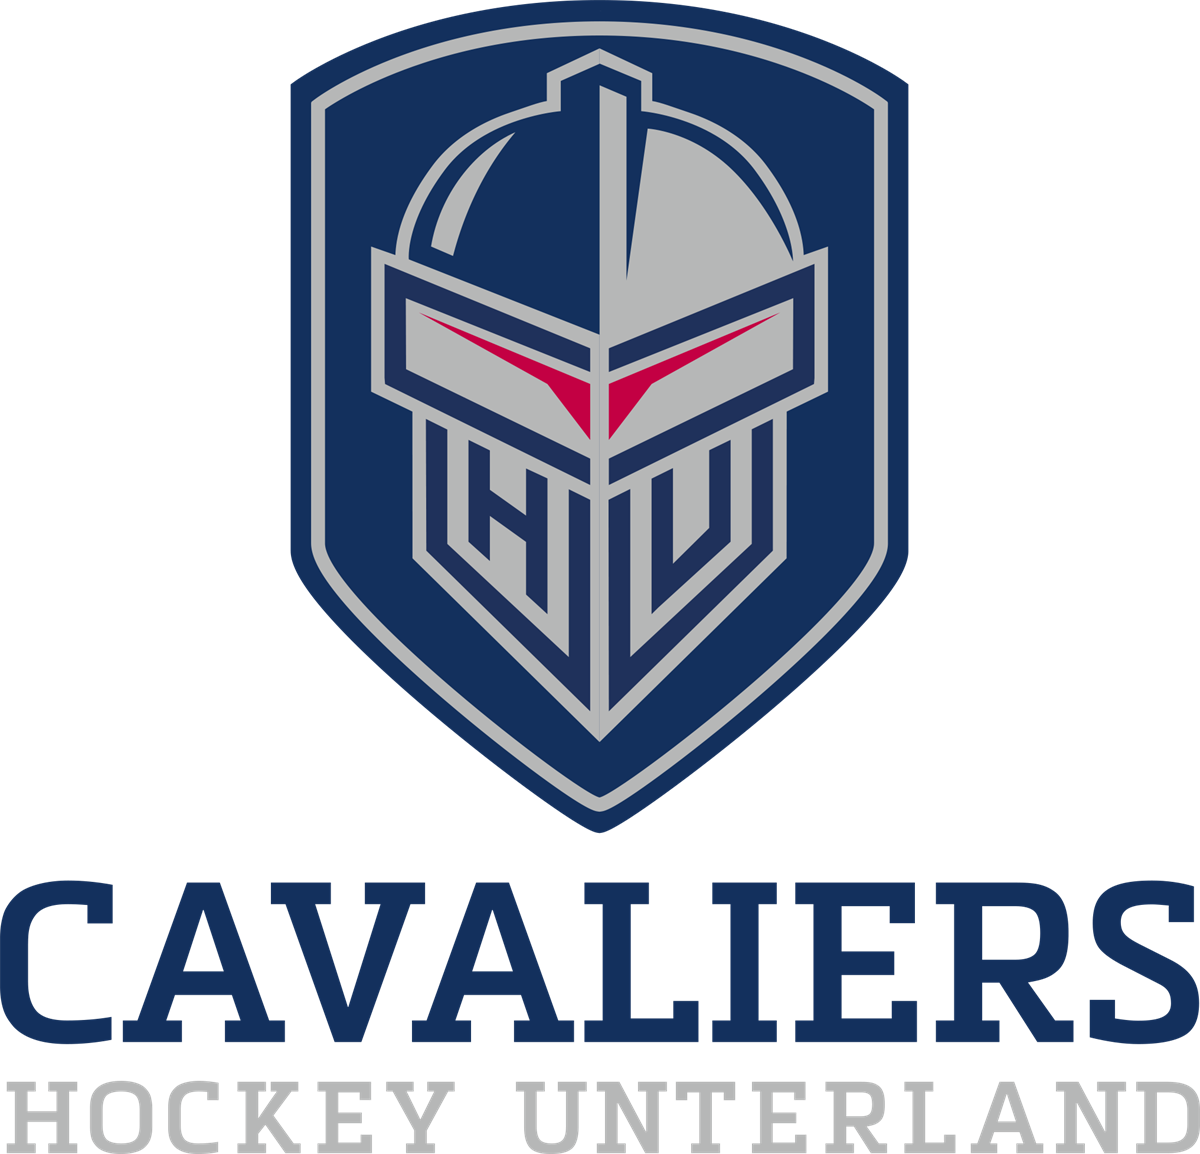 Hockey Unterland Cavaliers